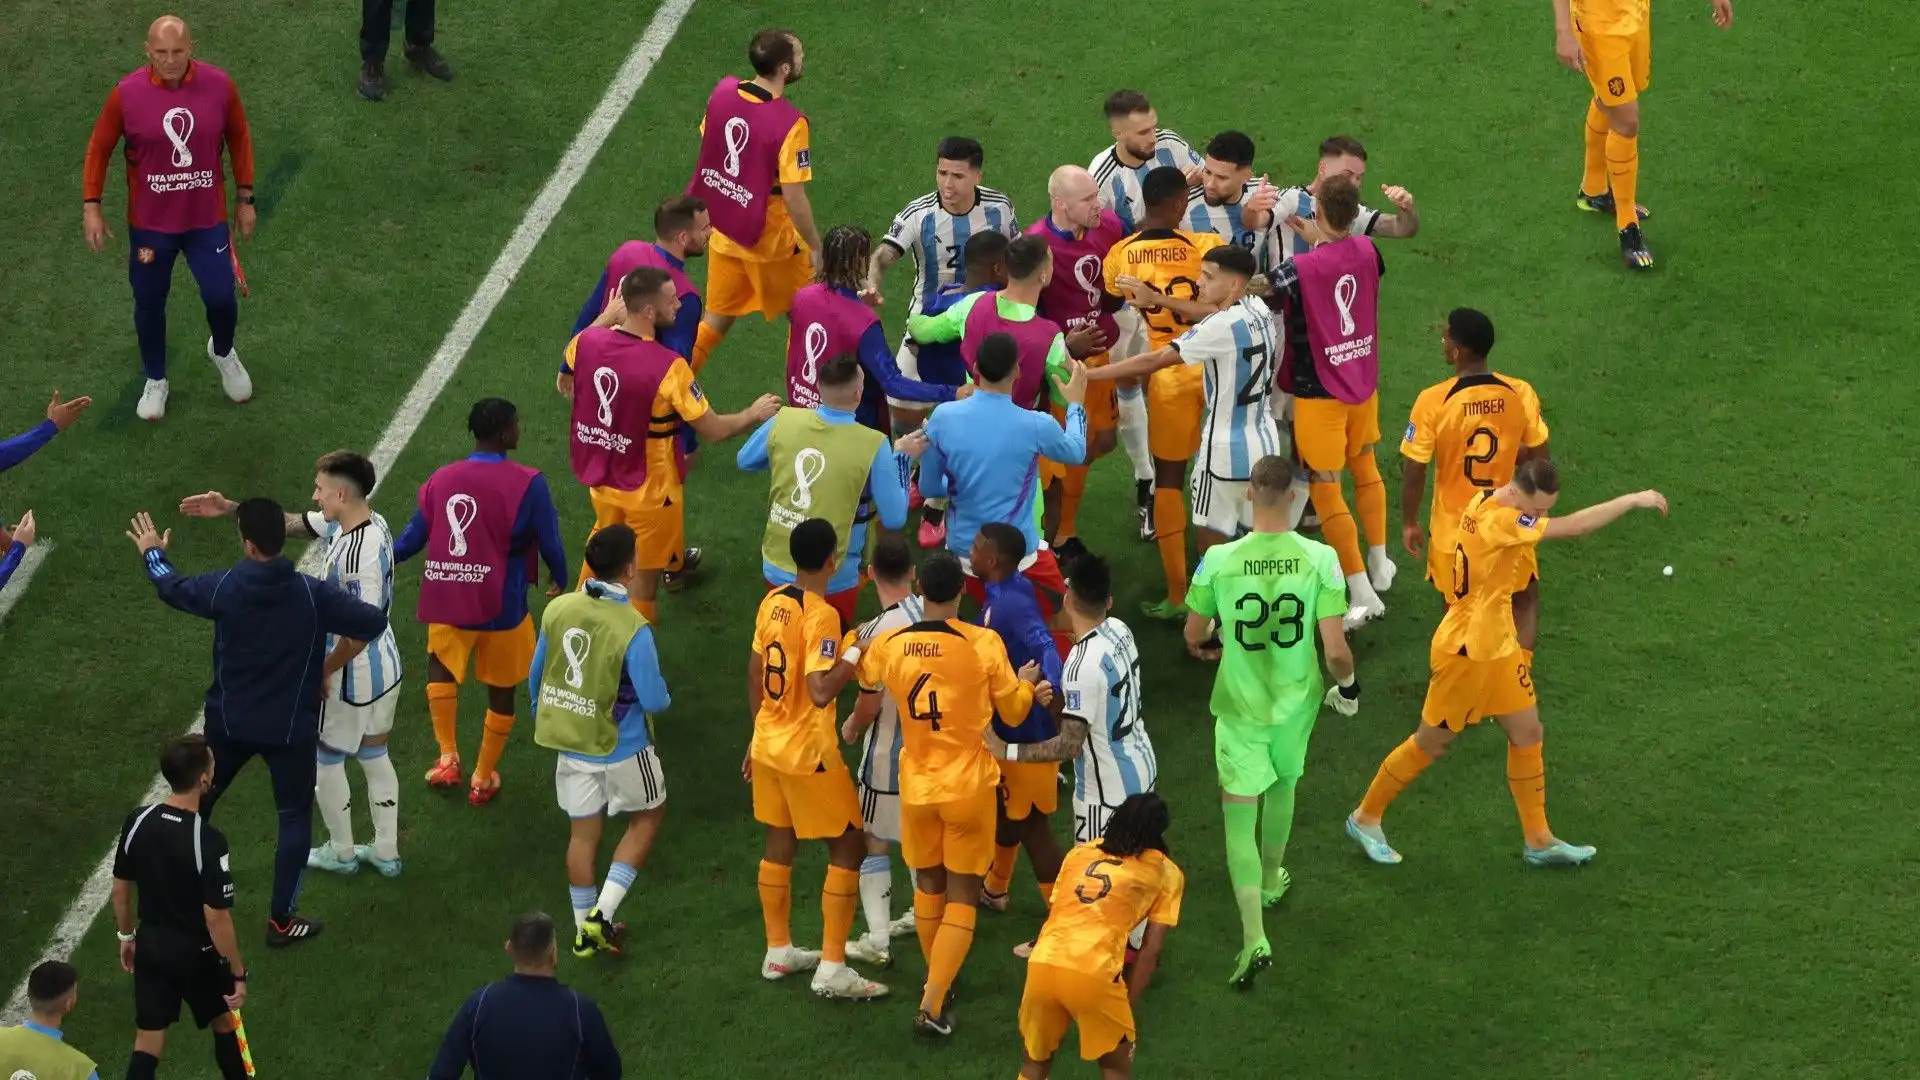 Con i nervi sempre più tesi, infatti, buona parte della panchina dell'Olanda si è unita ai giocatori in campo per contrastare gli argentini.